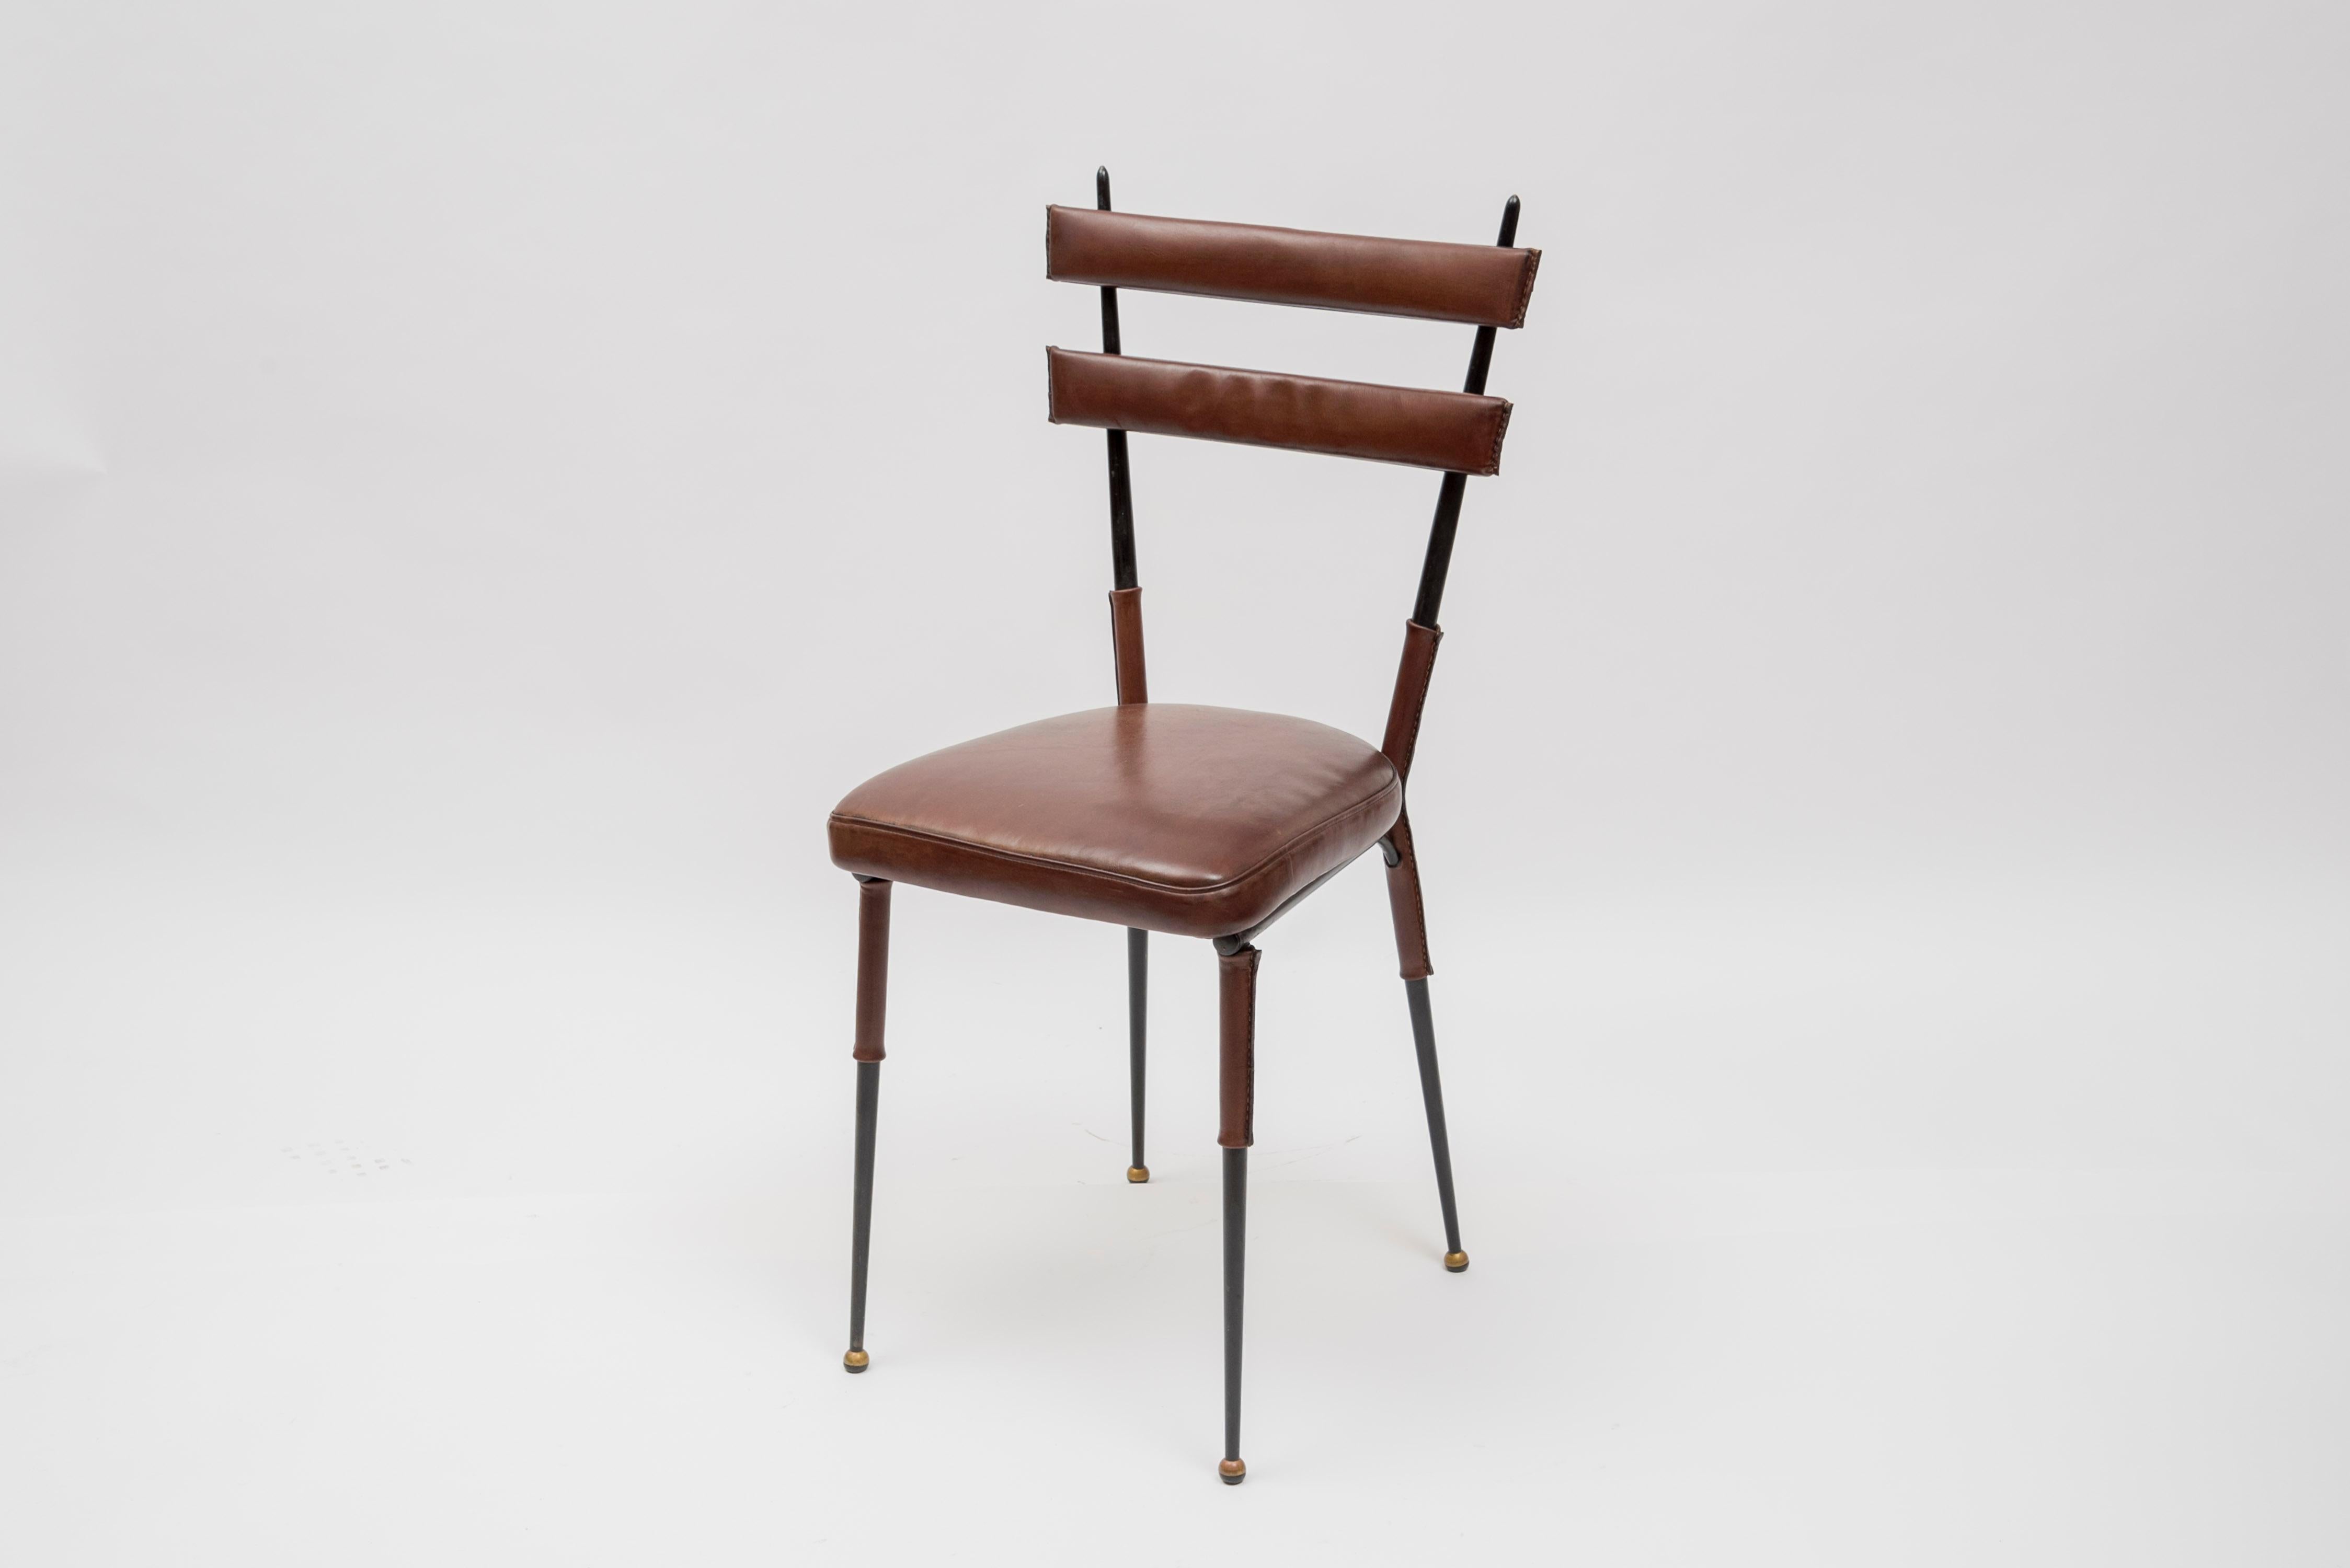 Ensemble de 4 chaises en cuir piqué de Jacques Adnet
Cuir et métal
1950s
France.